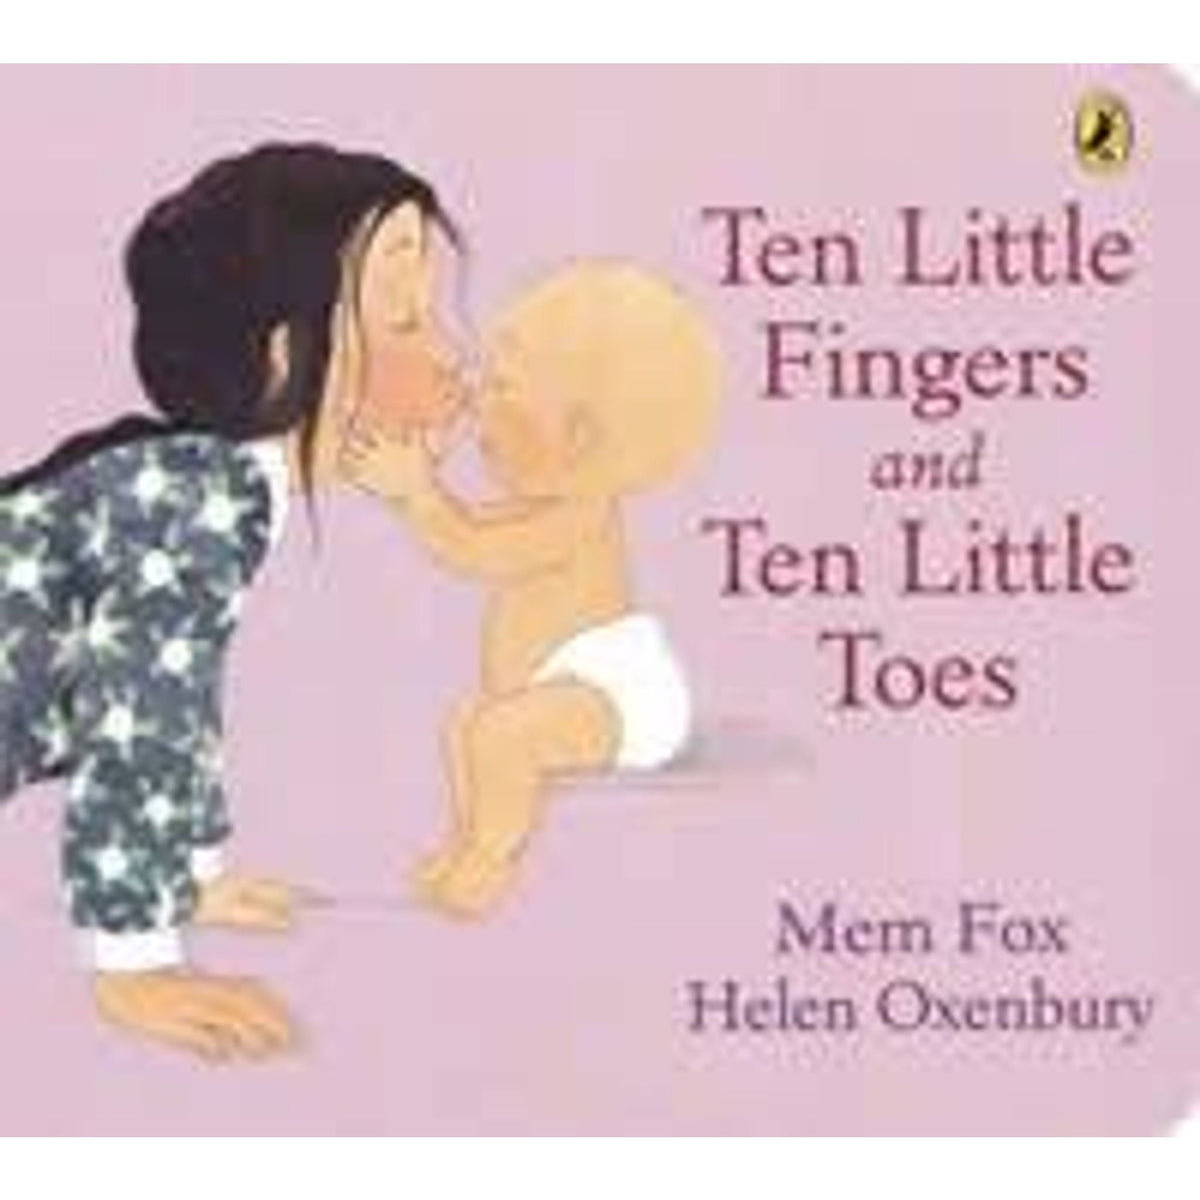 Ten Little Fingers & Ten Little Toes - Toybox Tales